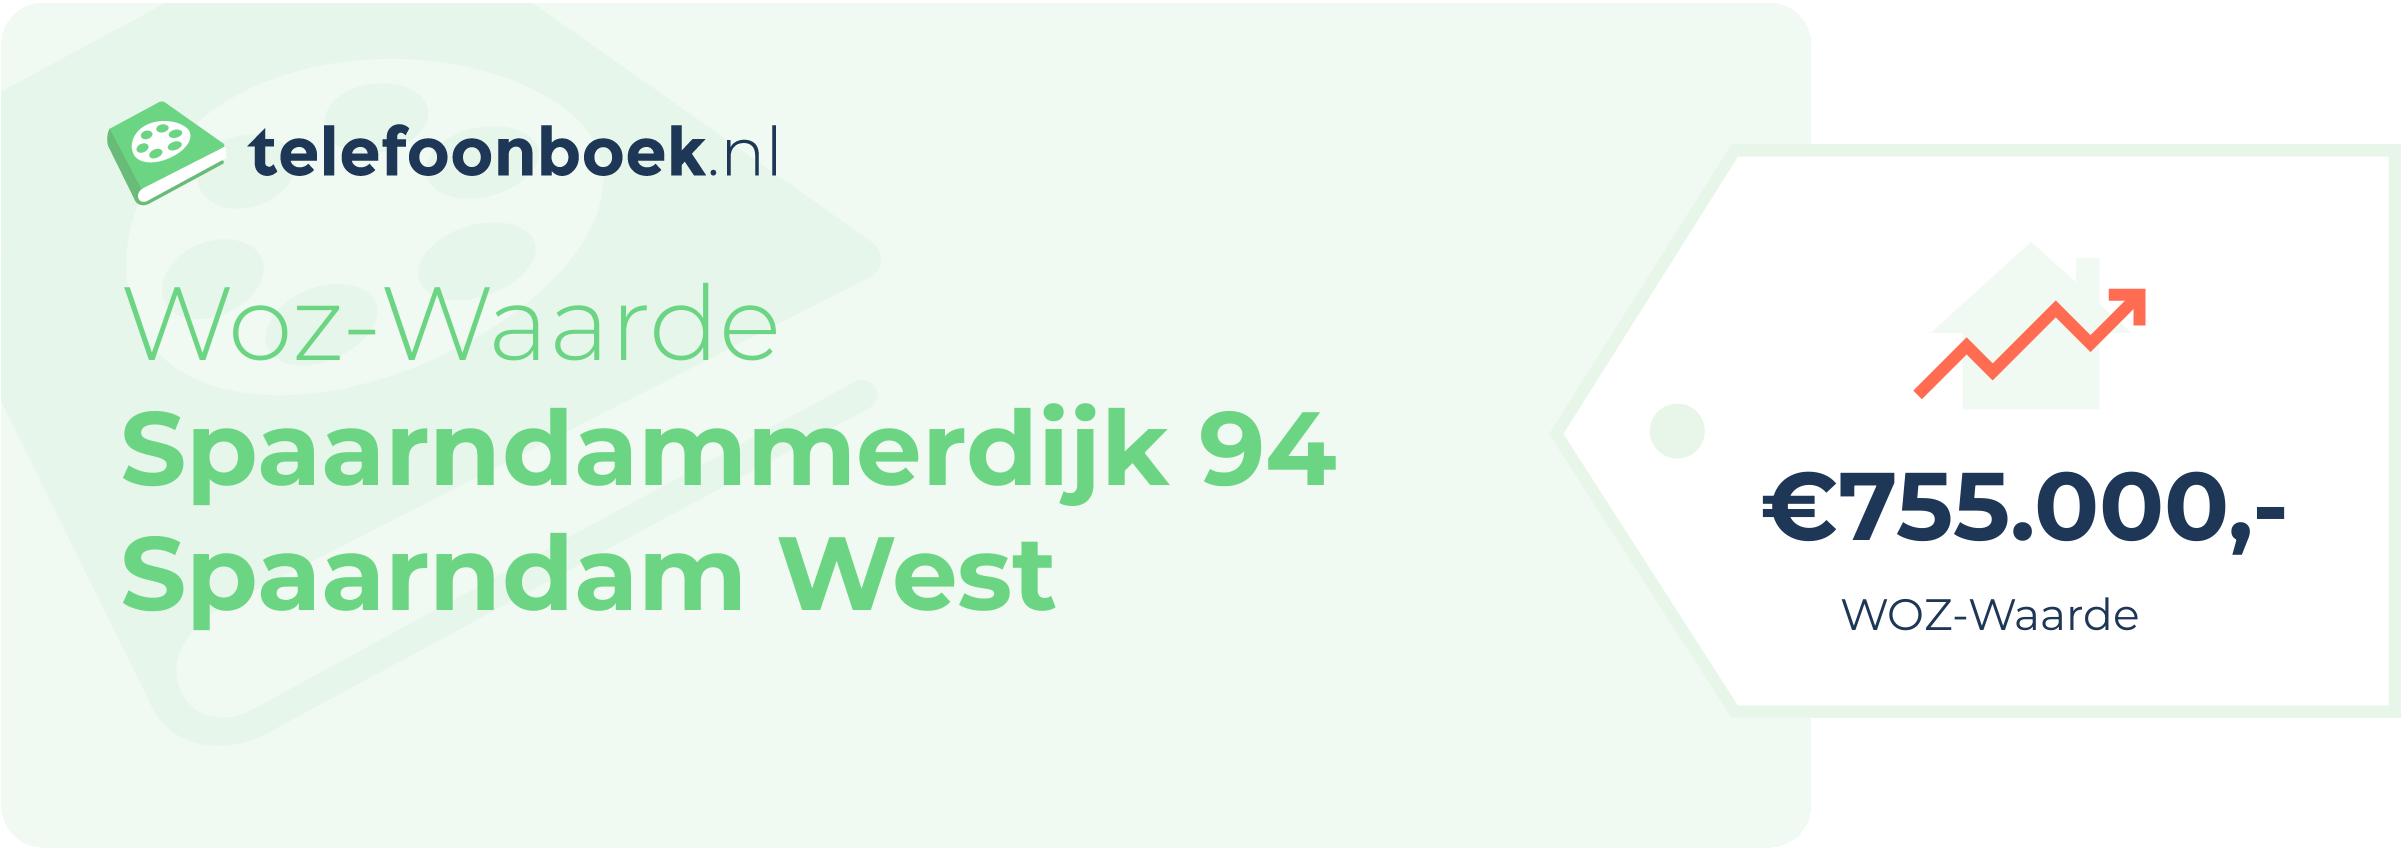 WOZ-waarde Spaarndammerdijk 94 Spaarndam West